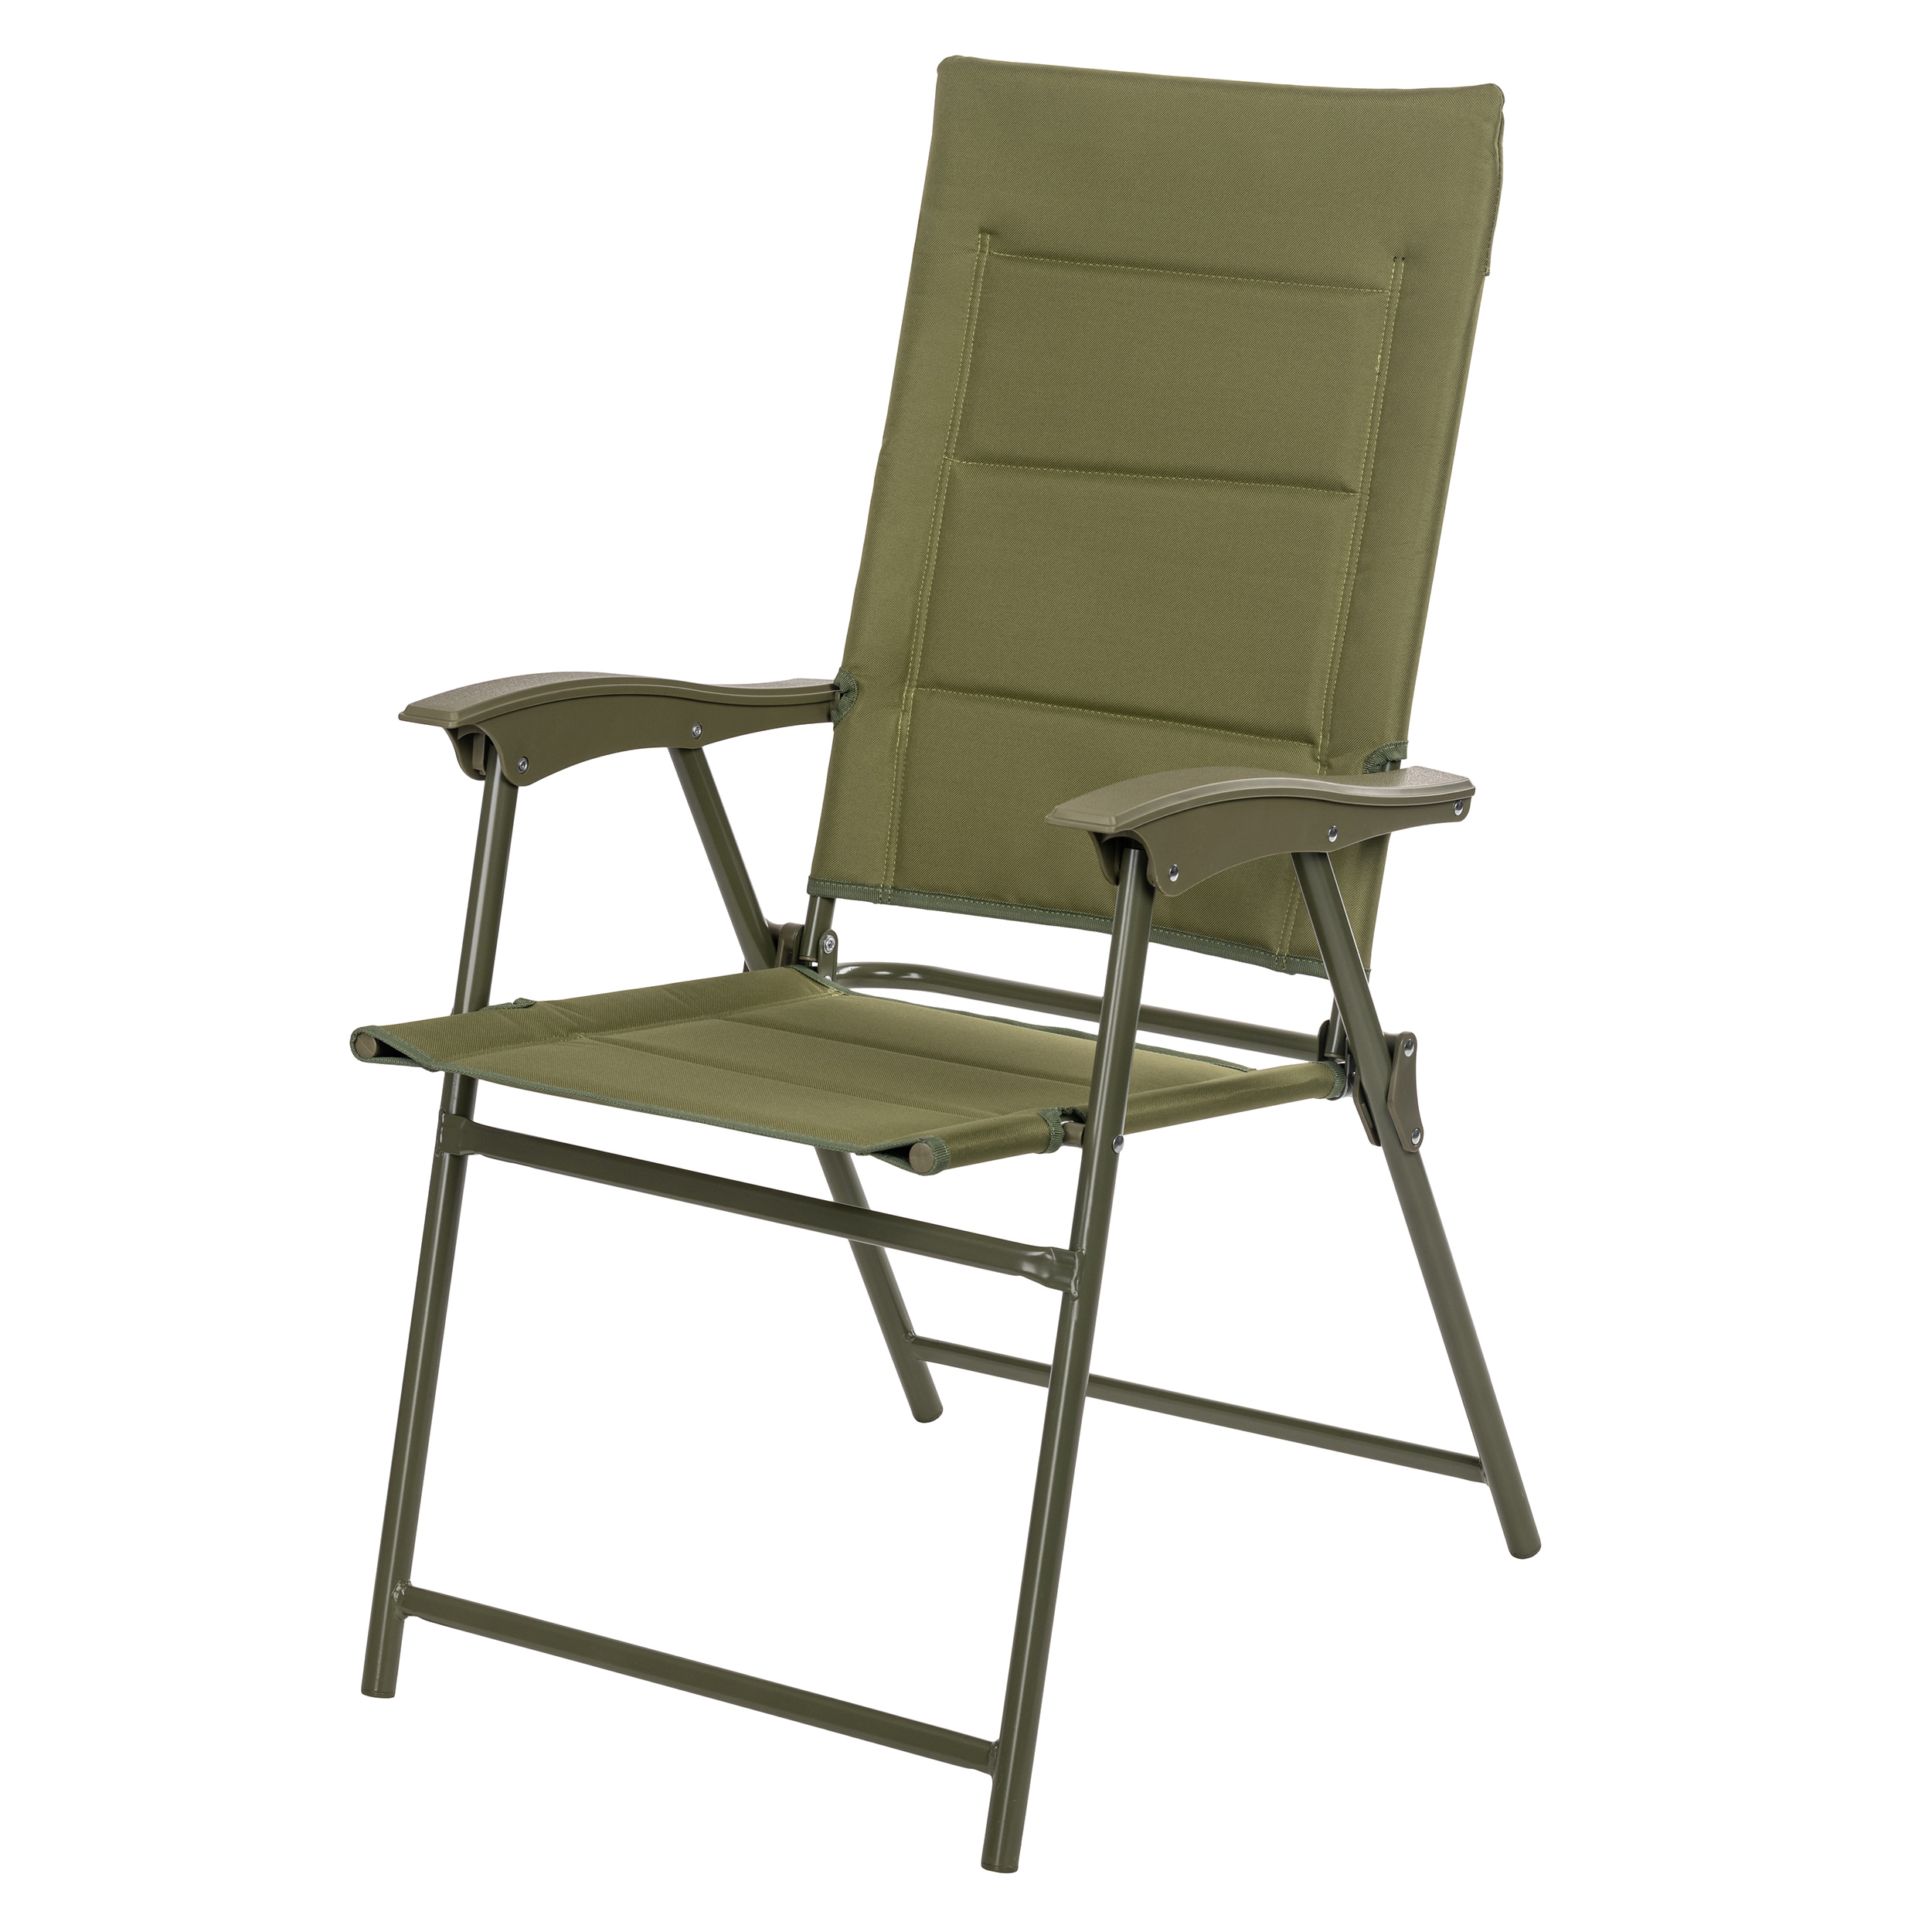 Krzesło składane turystyczne Mil-Tec Army - Olive